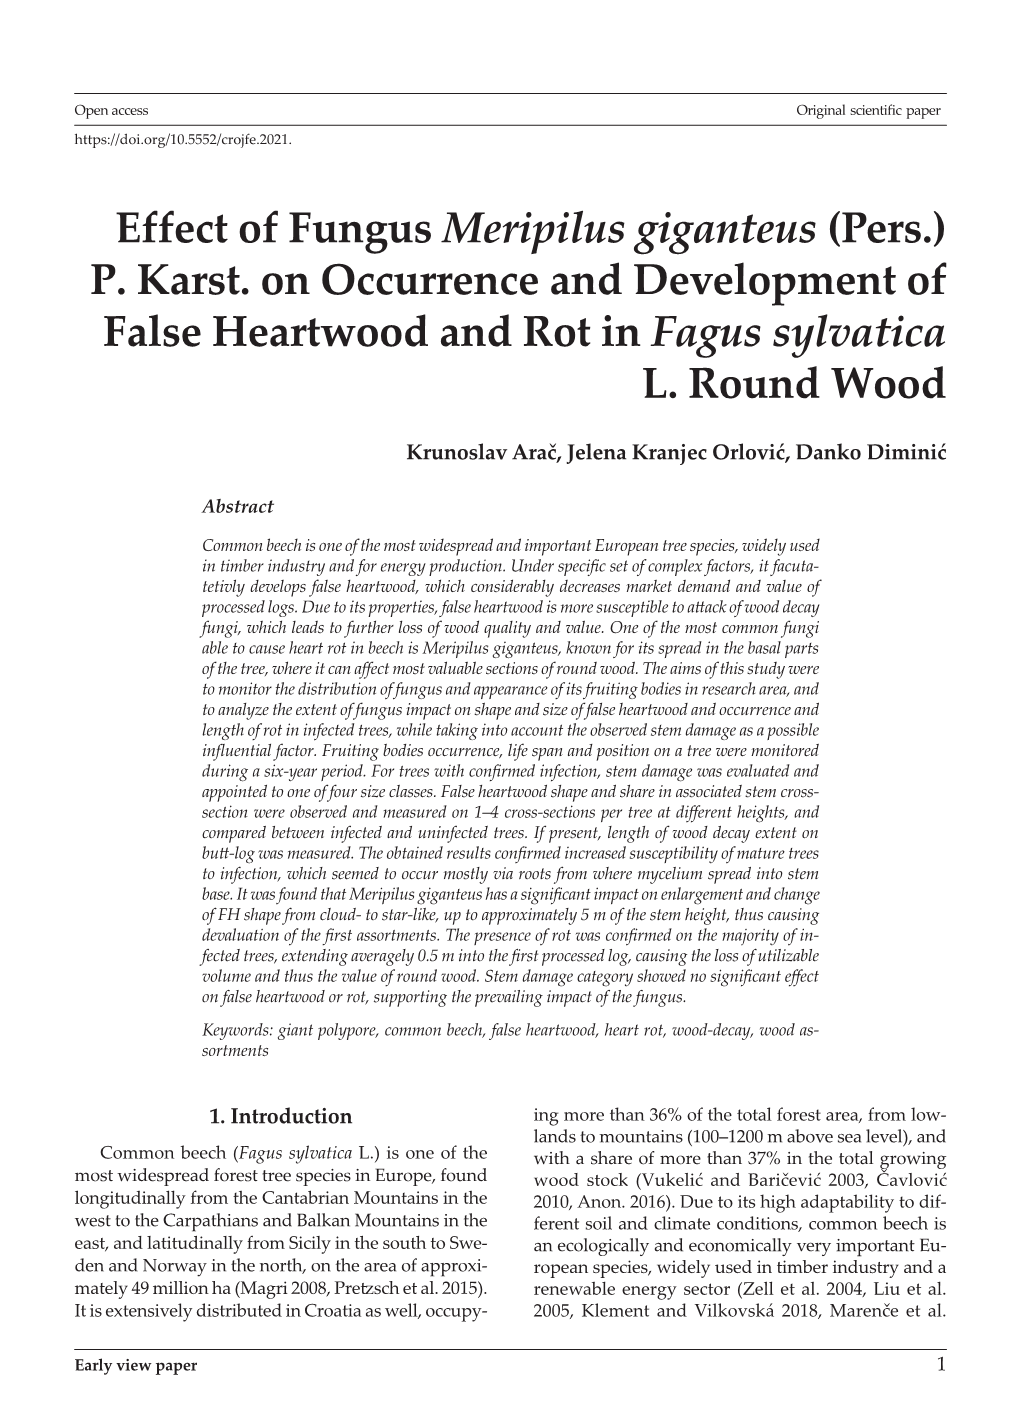 Effect of Fungus Meripilus Giganteus (Pers.) P